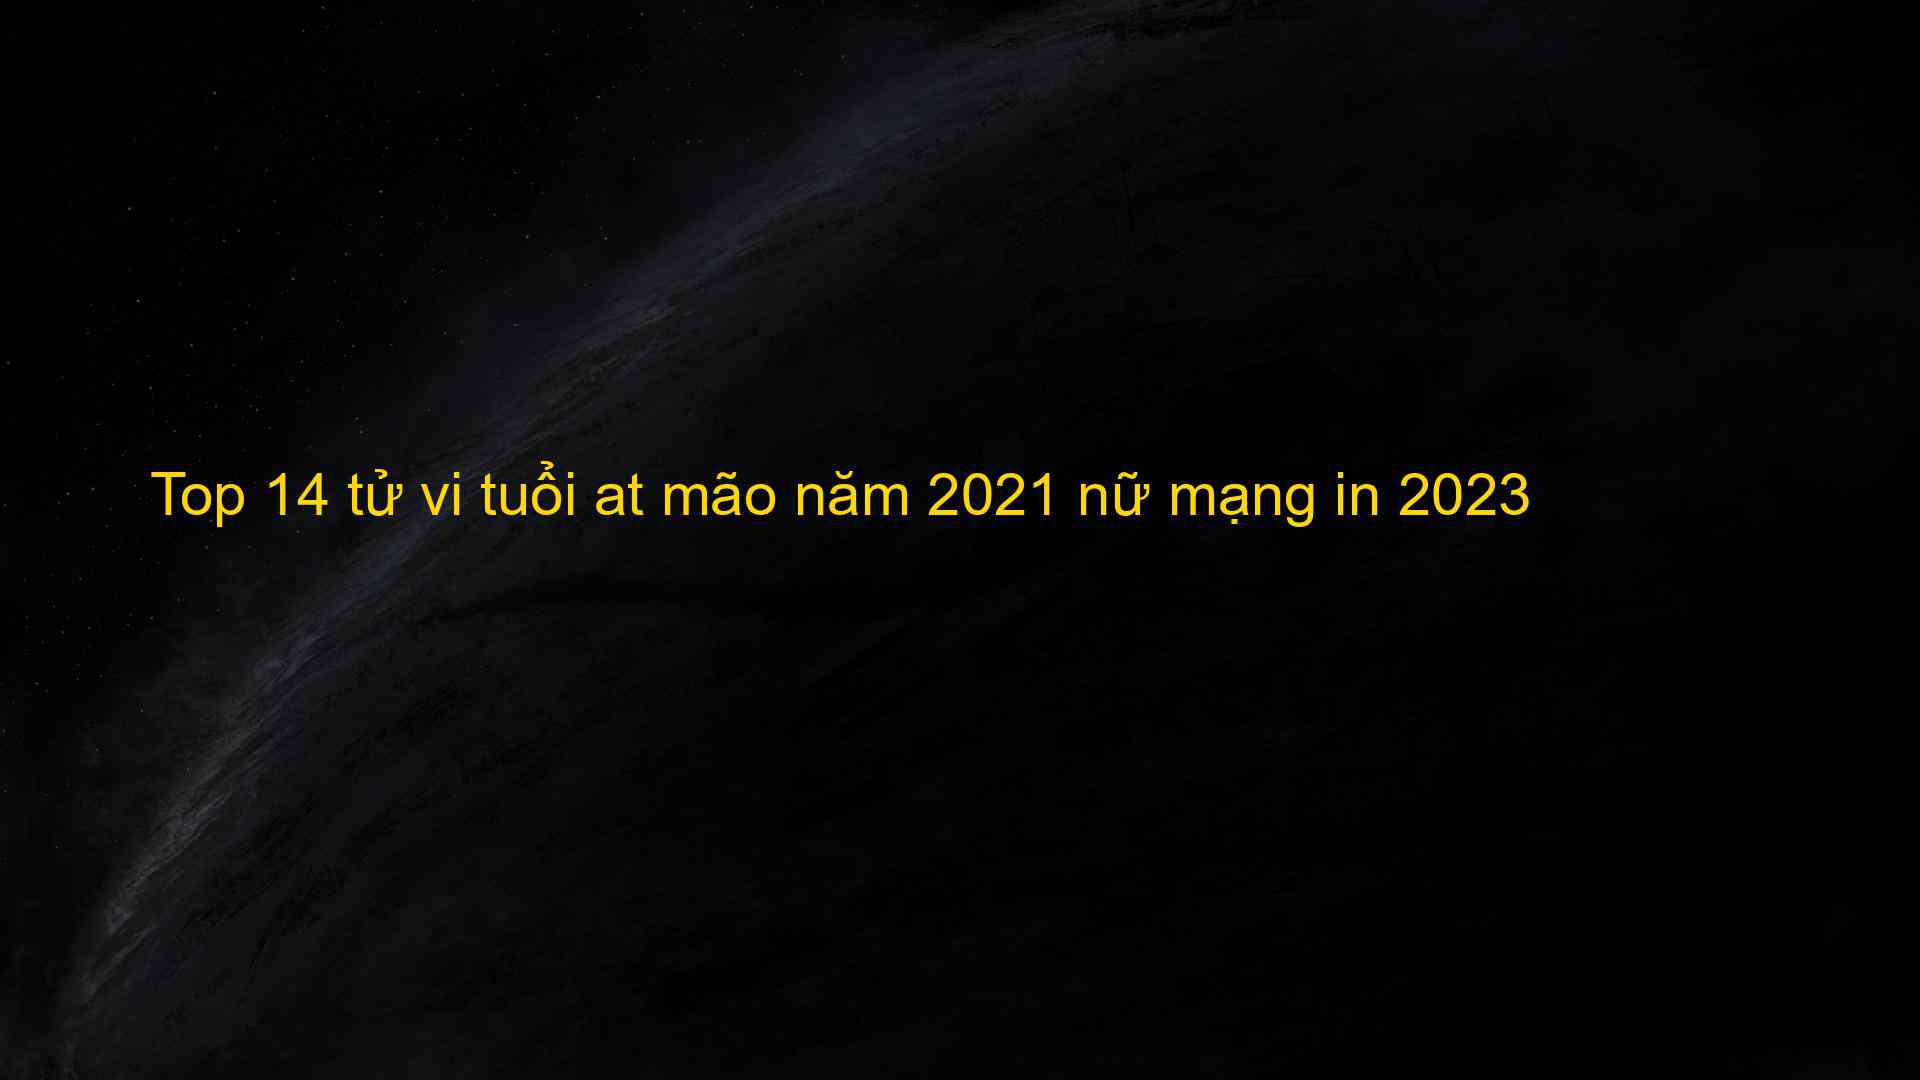 Top 14 tử vi tuổi at mão năm 2021 nữ mạng in 2023 - Kiến Thức Cho Người lao Động Việt Nam